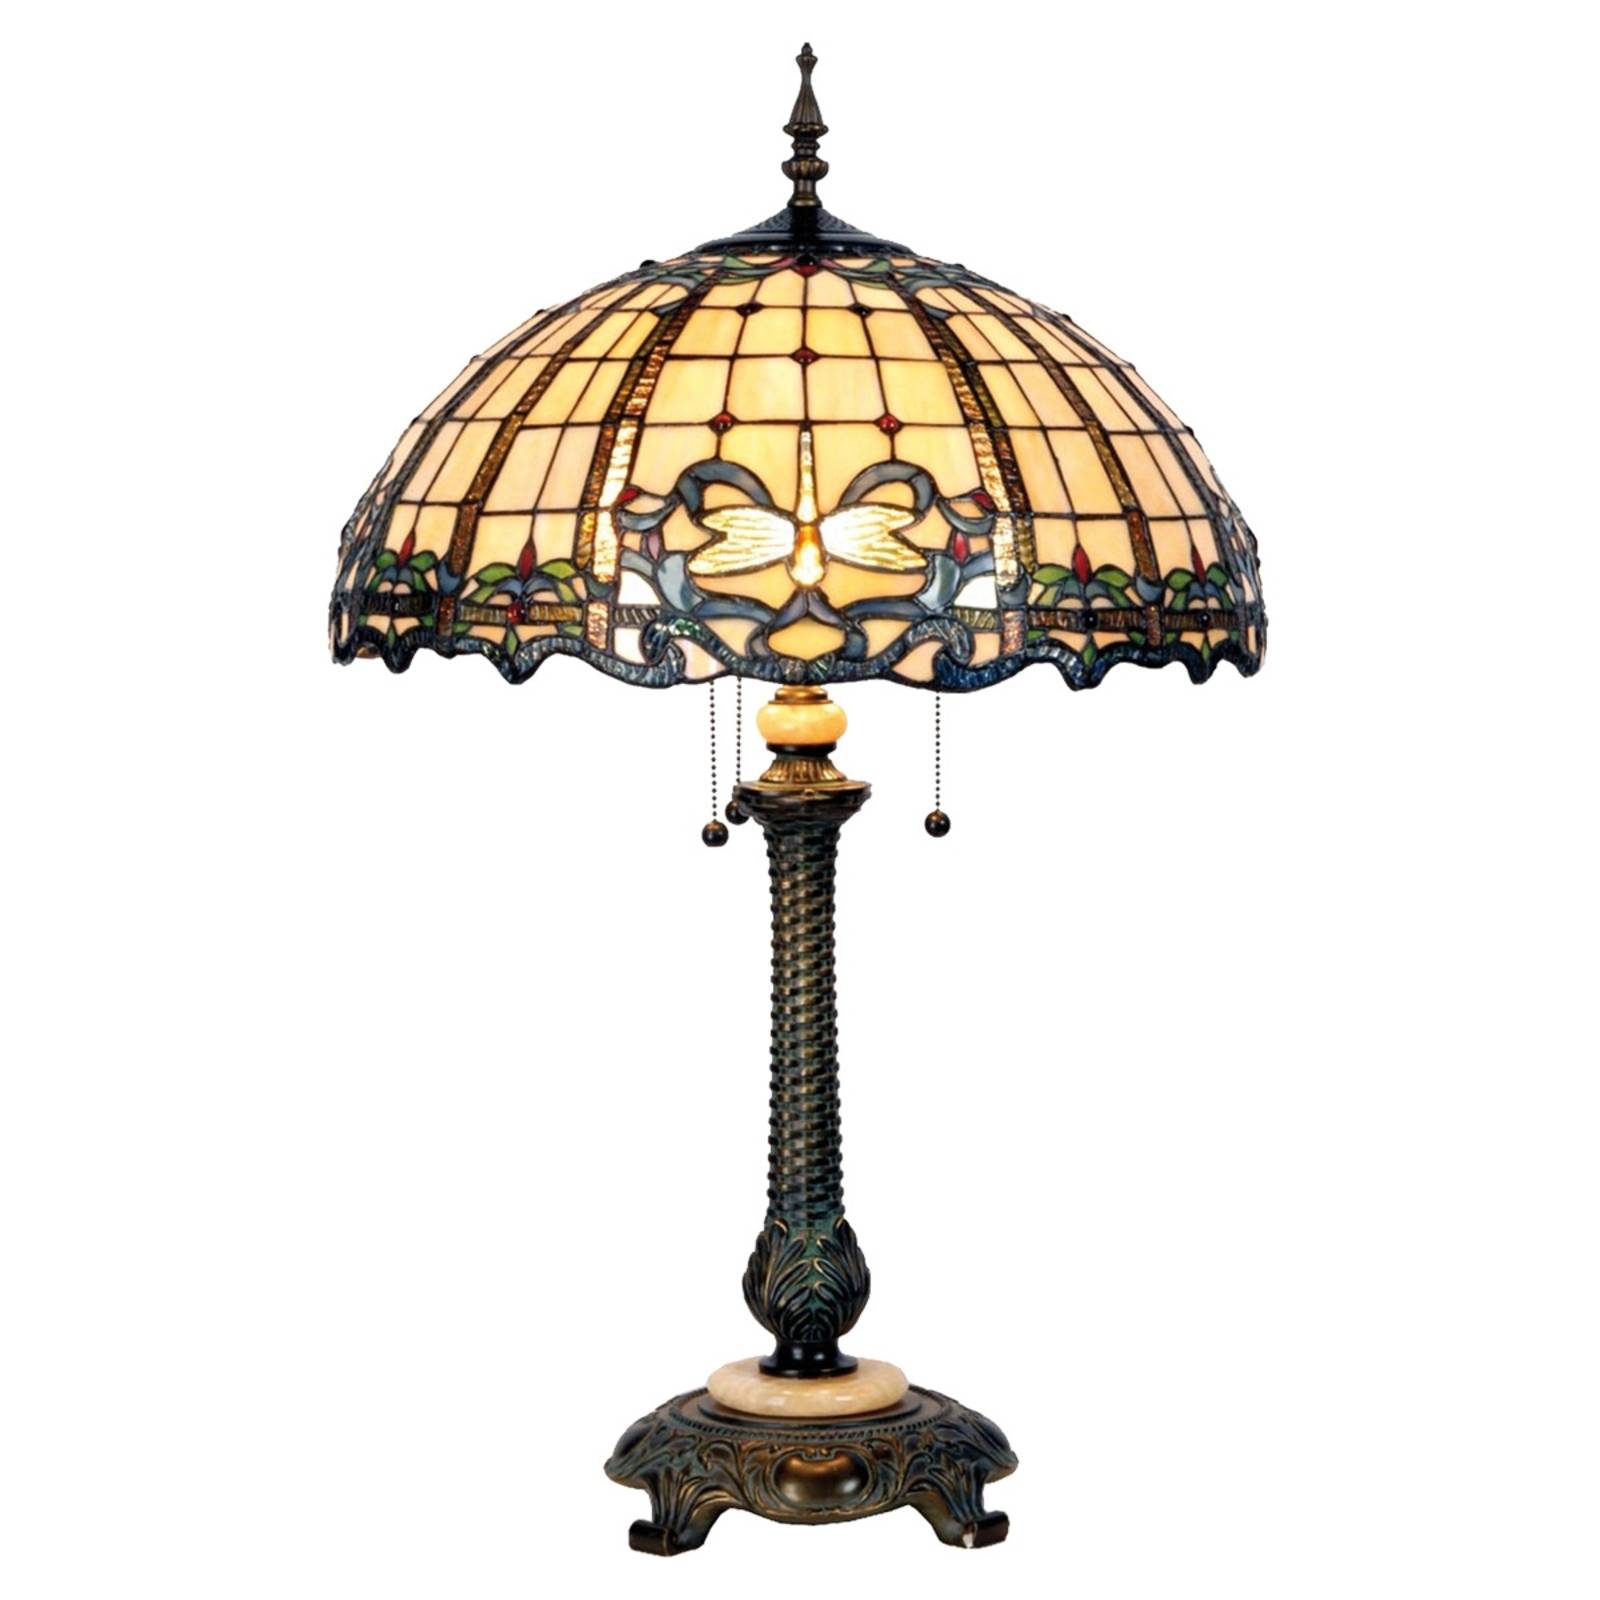 Très belle lampe de table Atlantis, style Tiffany